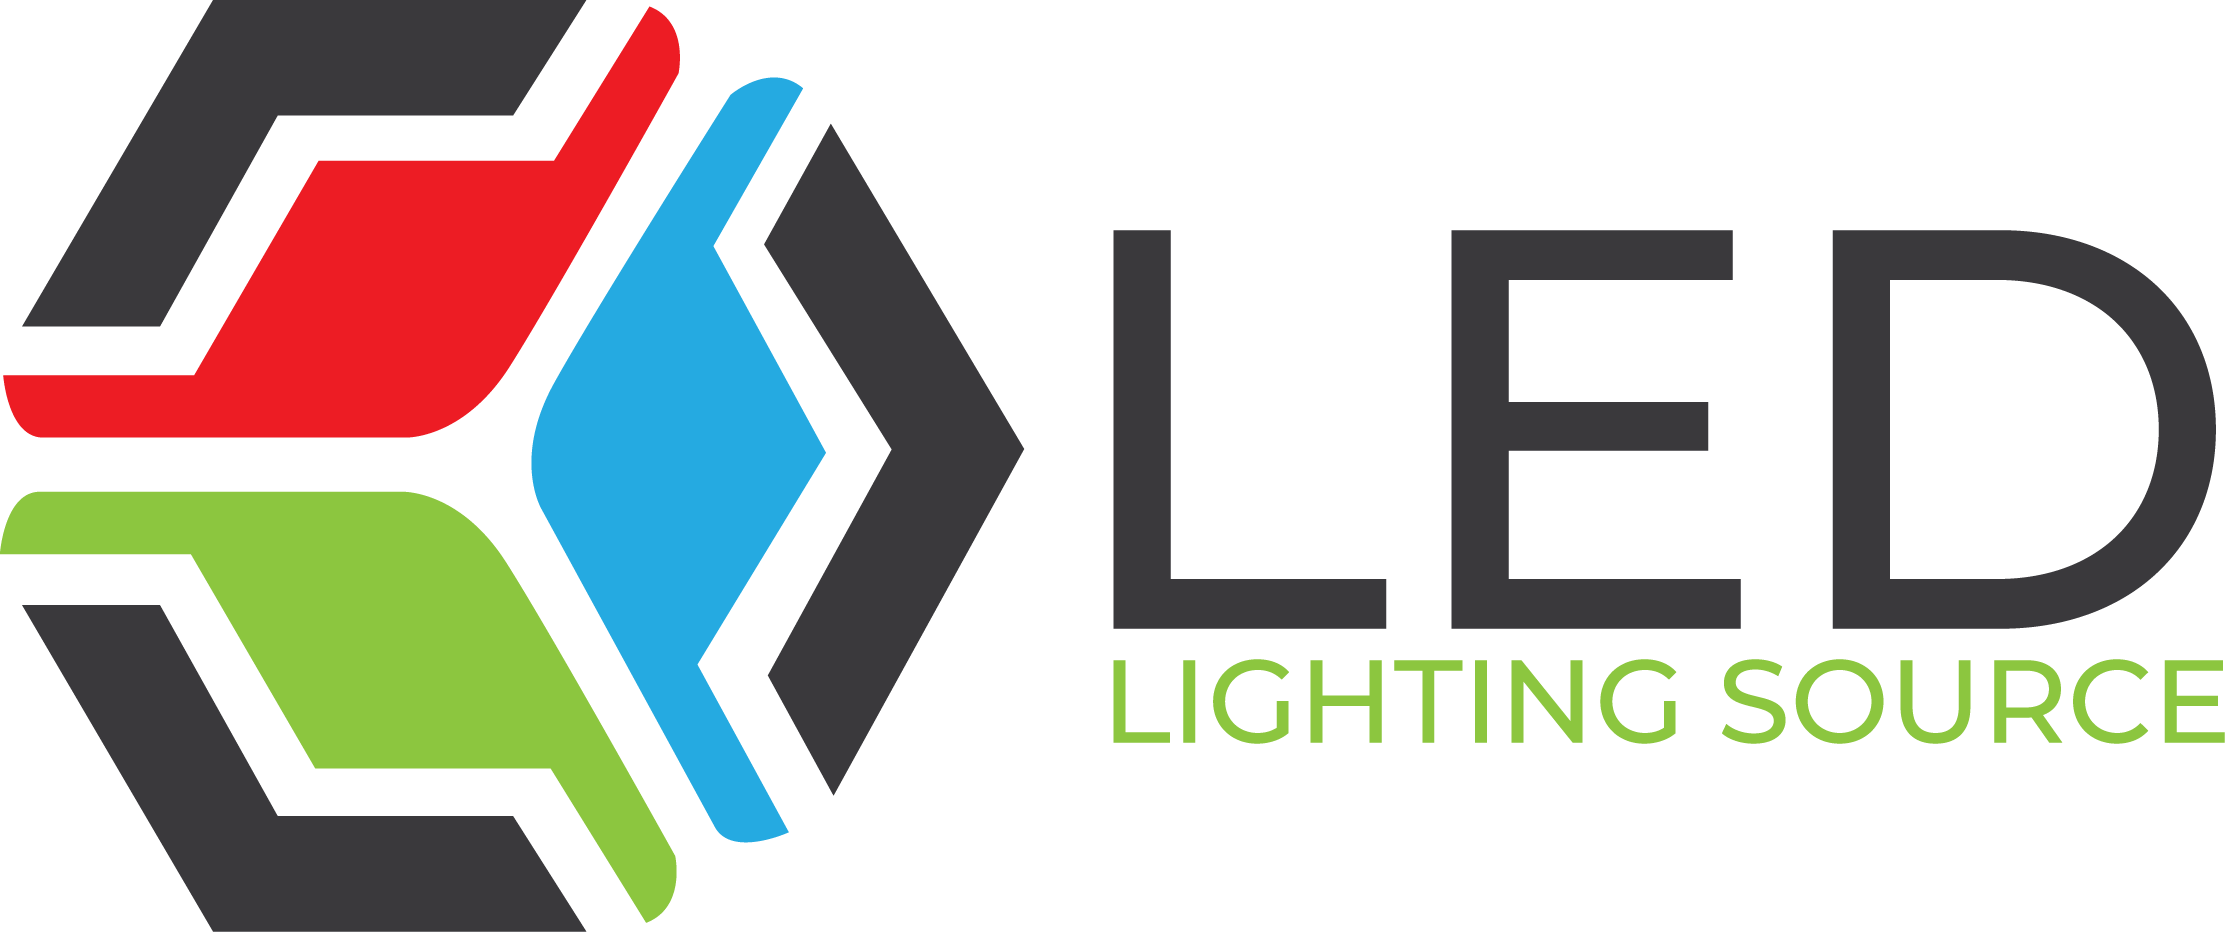 LED Lighting Source, LLC